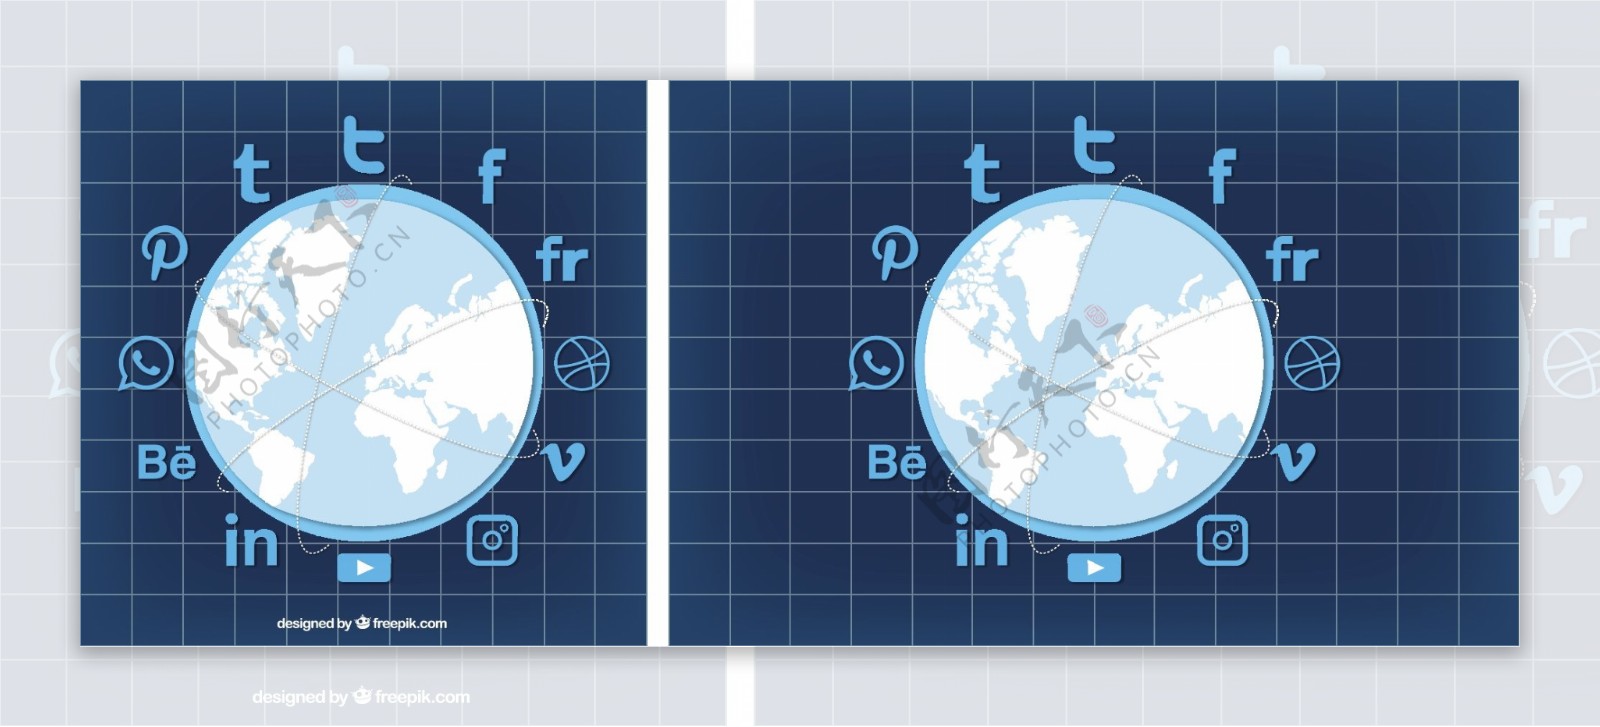 蓝色背景与世界地图和社交网络图标